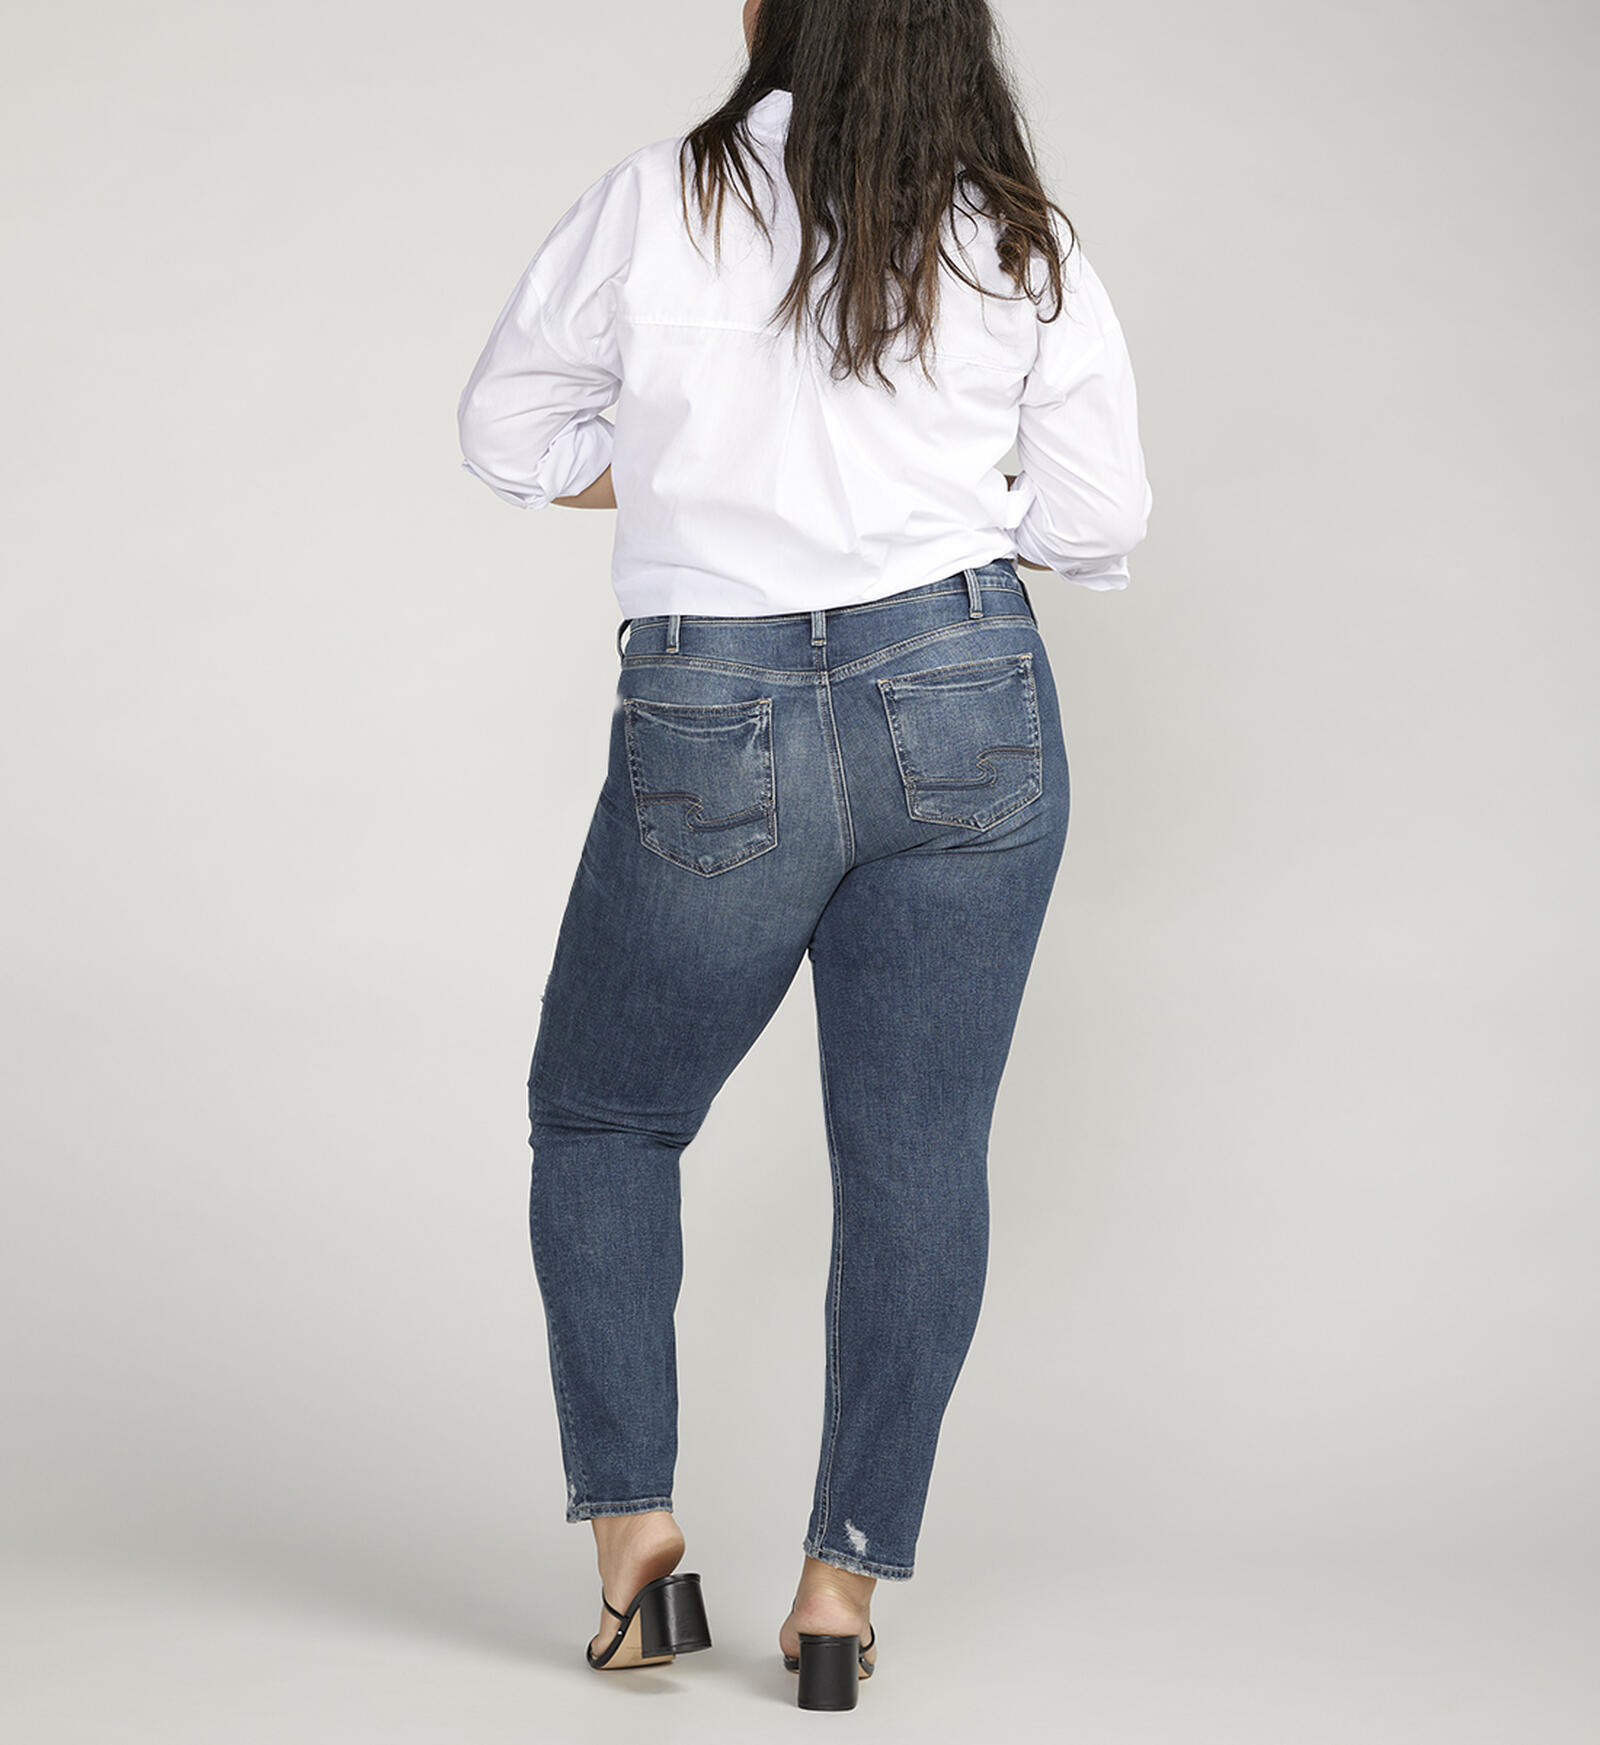 Buy Boyfriend Mid Rise Slim Leg Jeans Plus Size for CAD 64.00